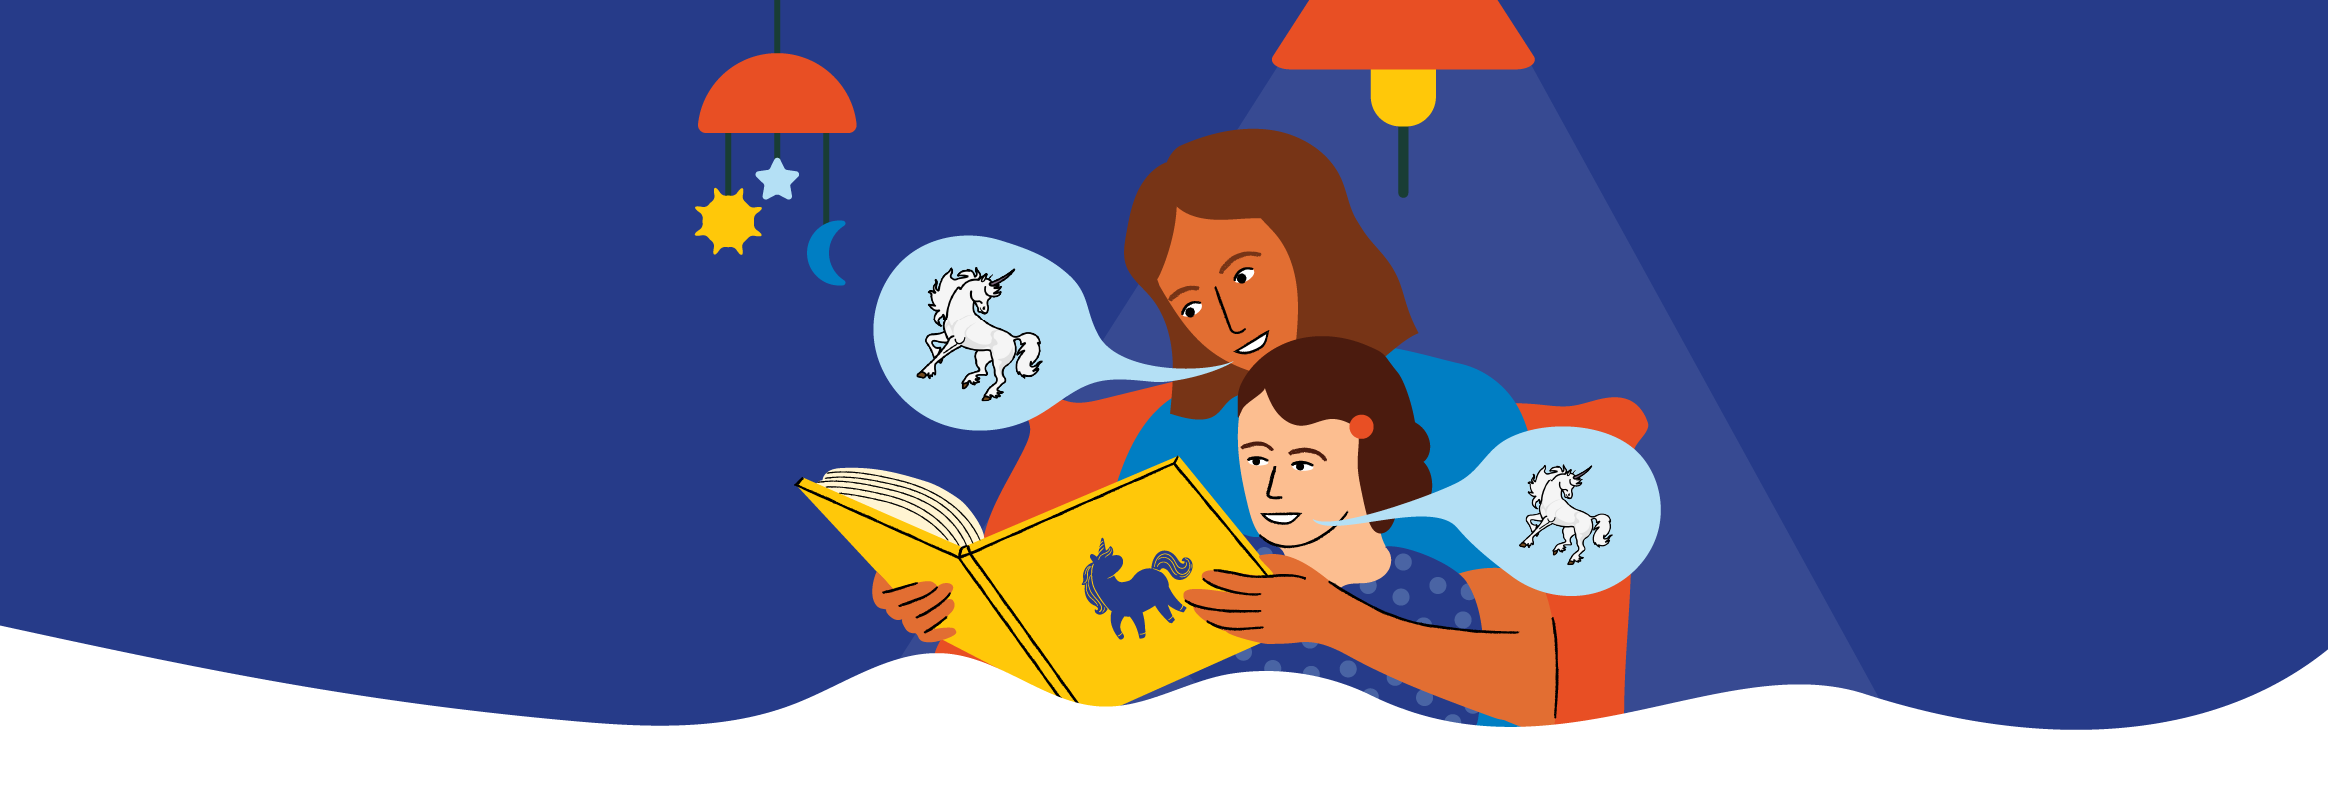 Een volwassene die een prentenboek leest met een eenhoorn op de omslag. Twee tekstballonnen met eenhoorns komen uit de mond van de volwassene en het kind.